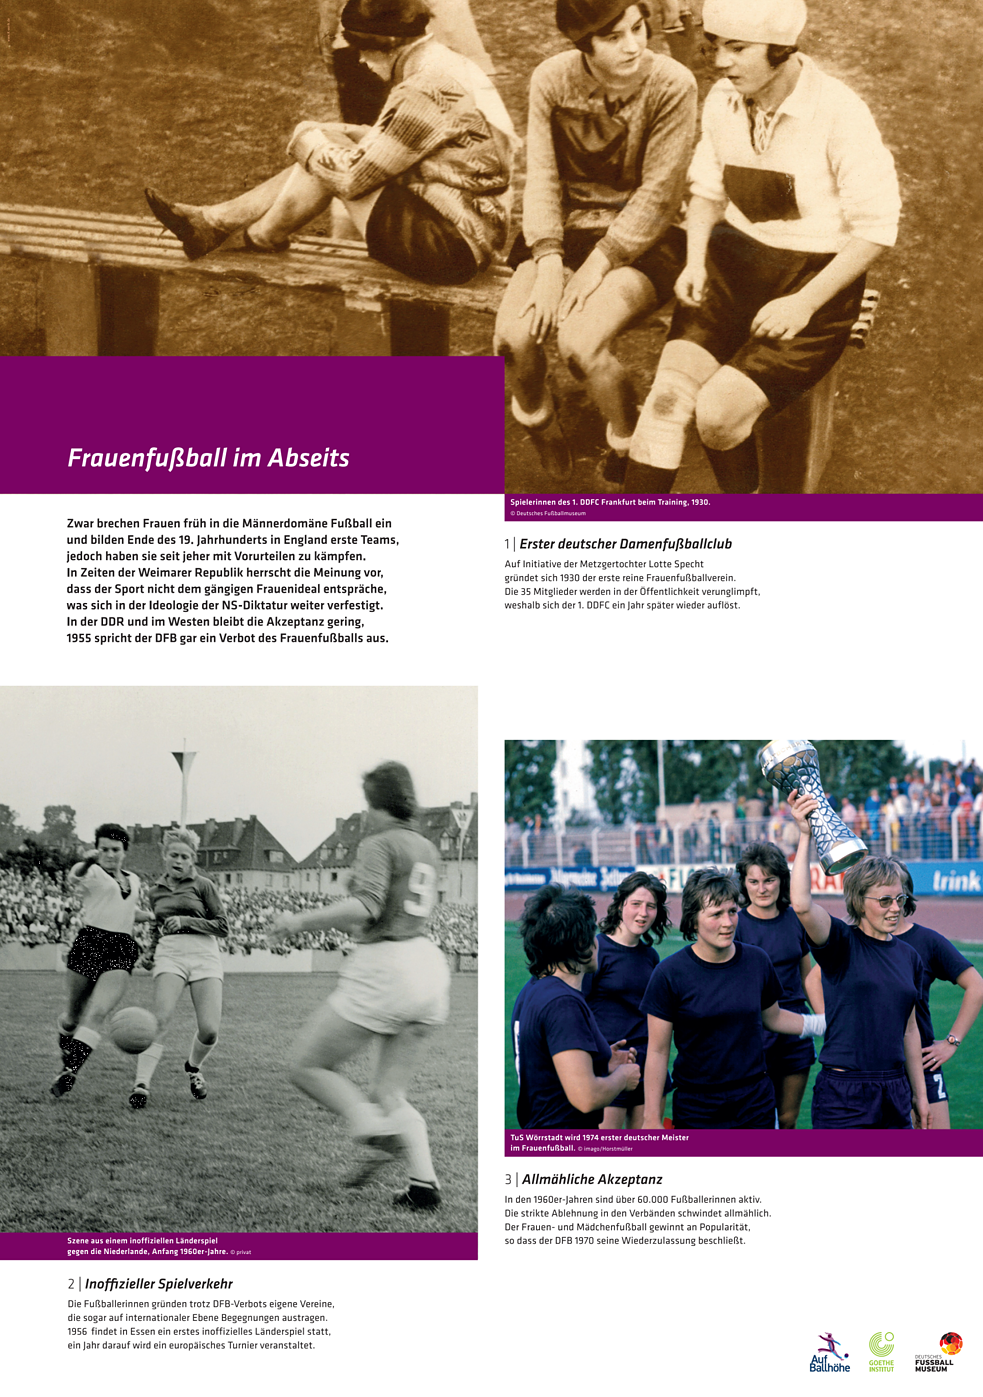 Poster tentang rendahnya penerimaan terhadap gerakan sepak bola wanita